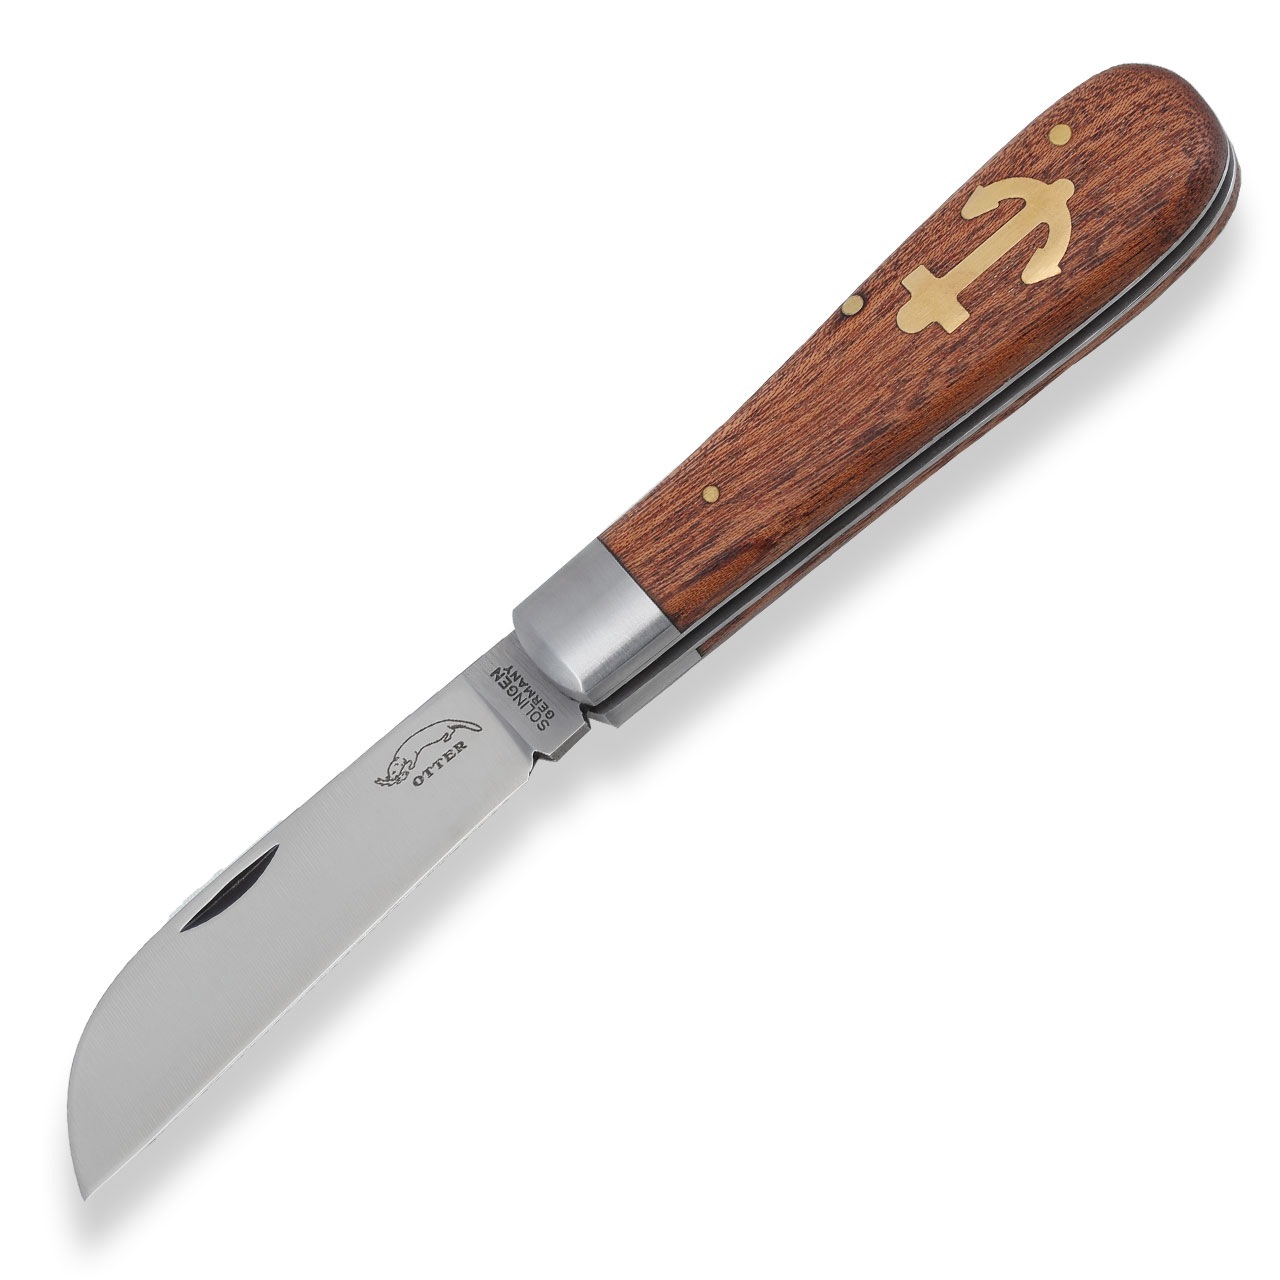 Anchor knife sapele large